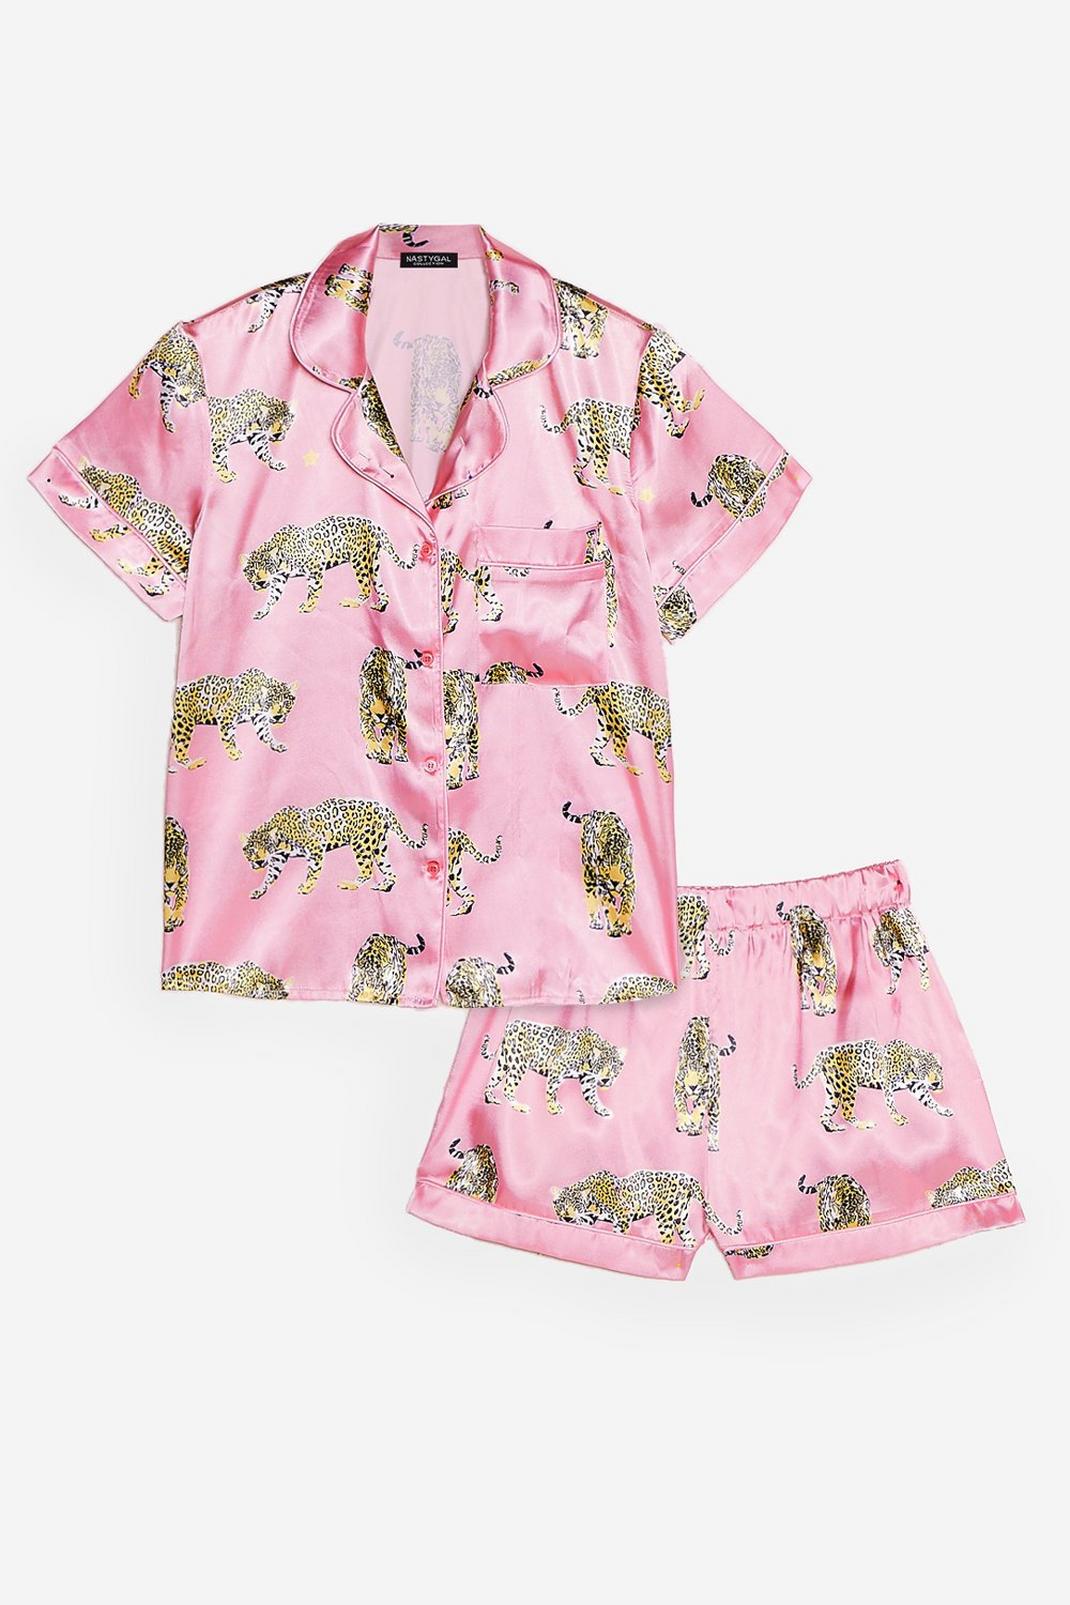 Pink Cheetahs Always Prosper Satin Shorts Pajama Set image number 1